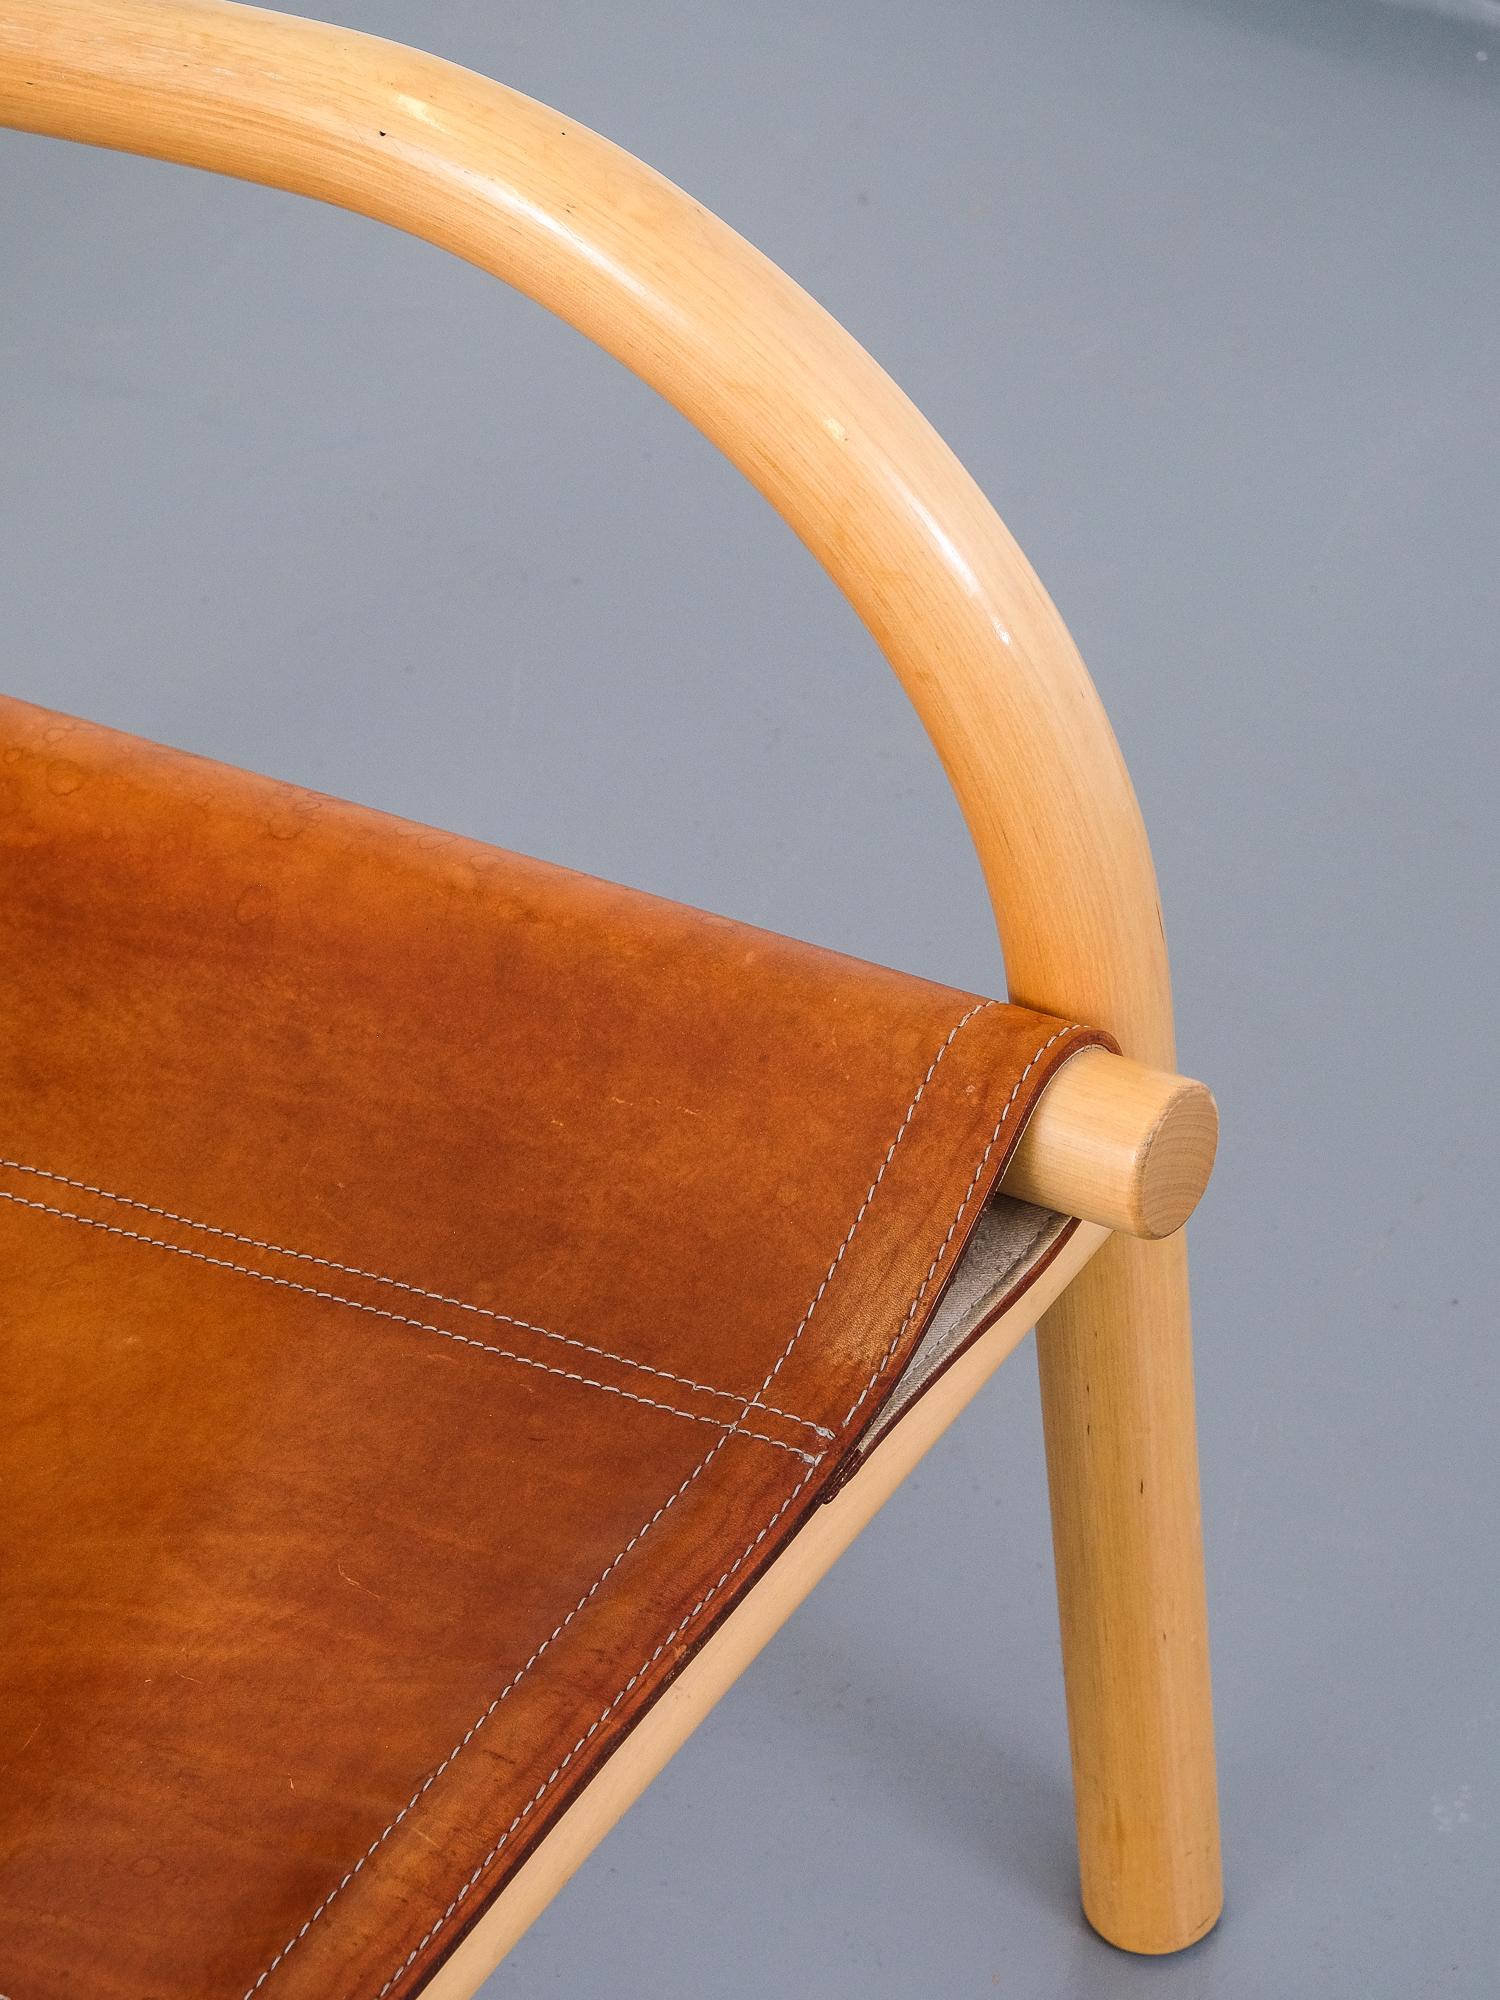 Scandinavian Modern Pair of 1970s Lounge Safari Chairs by Ben af Schultén for Artek